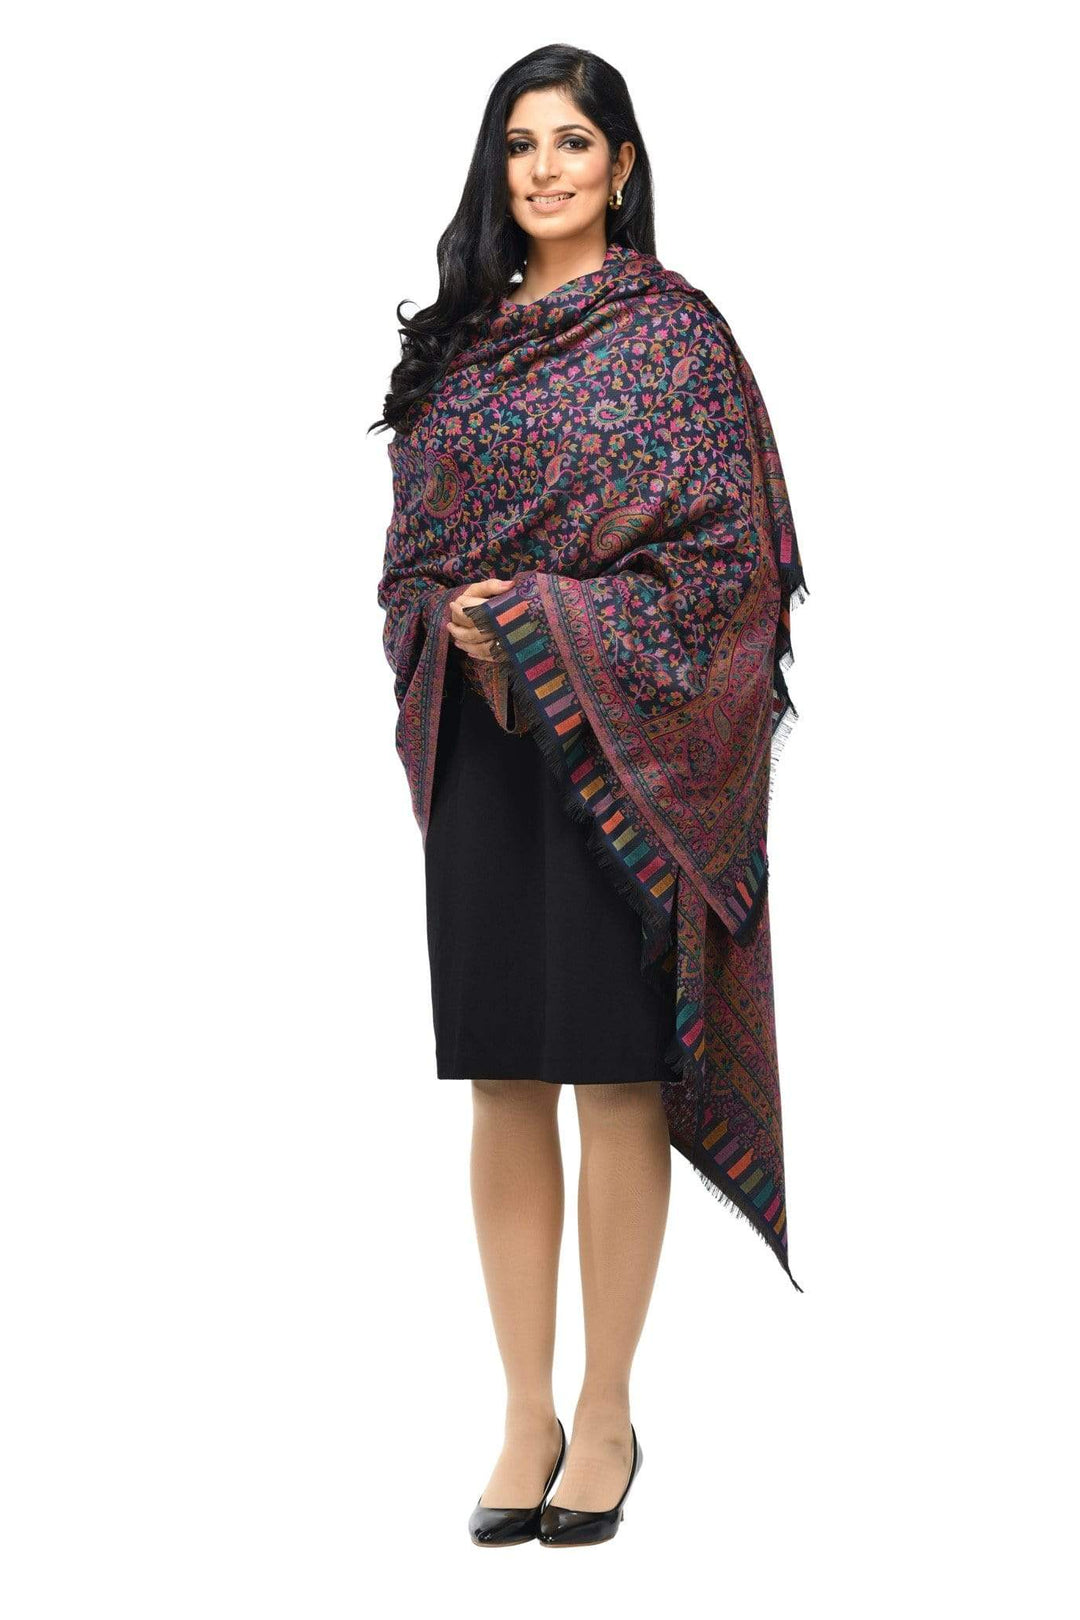 Pashwool 100x200 Pashwool Womens Kaani Design Shawl, Light Weight, Soft and Warm